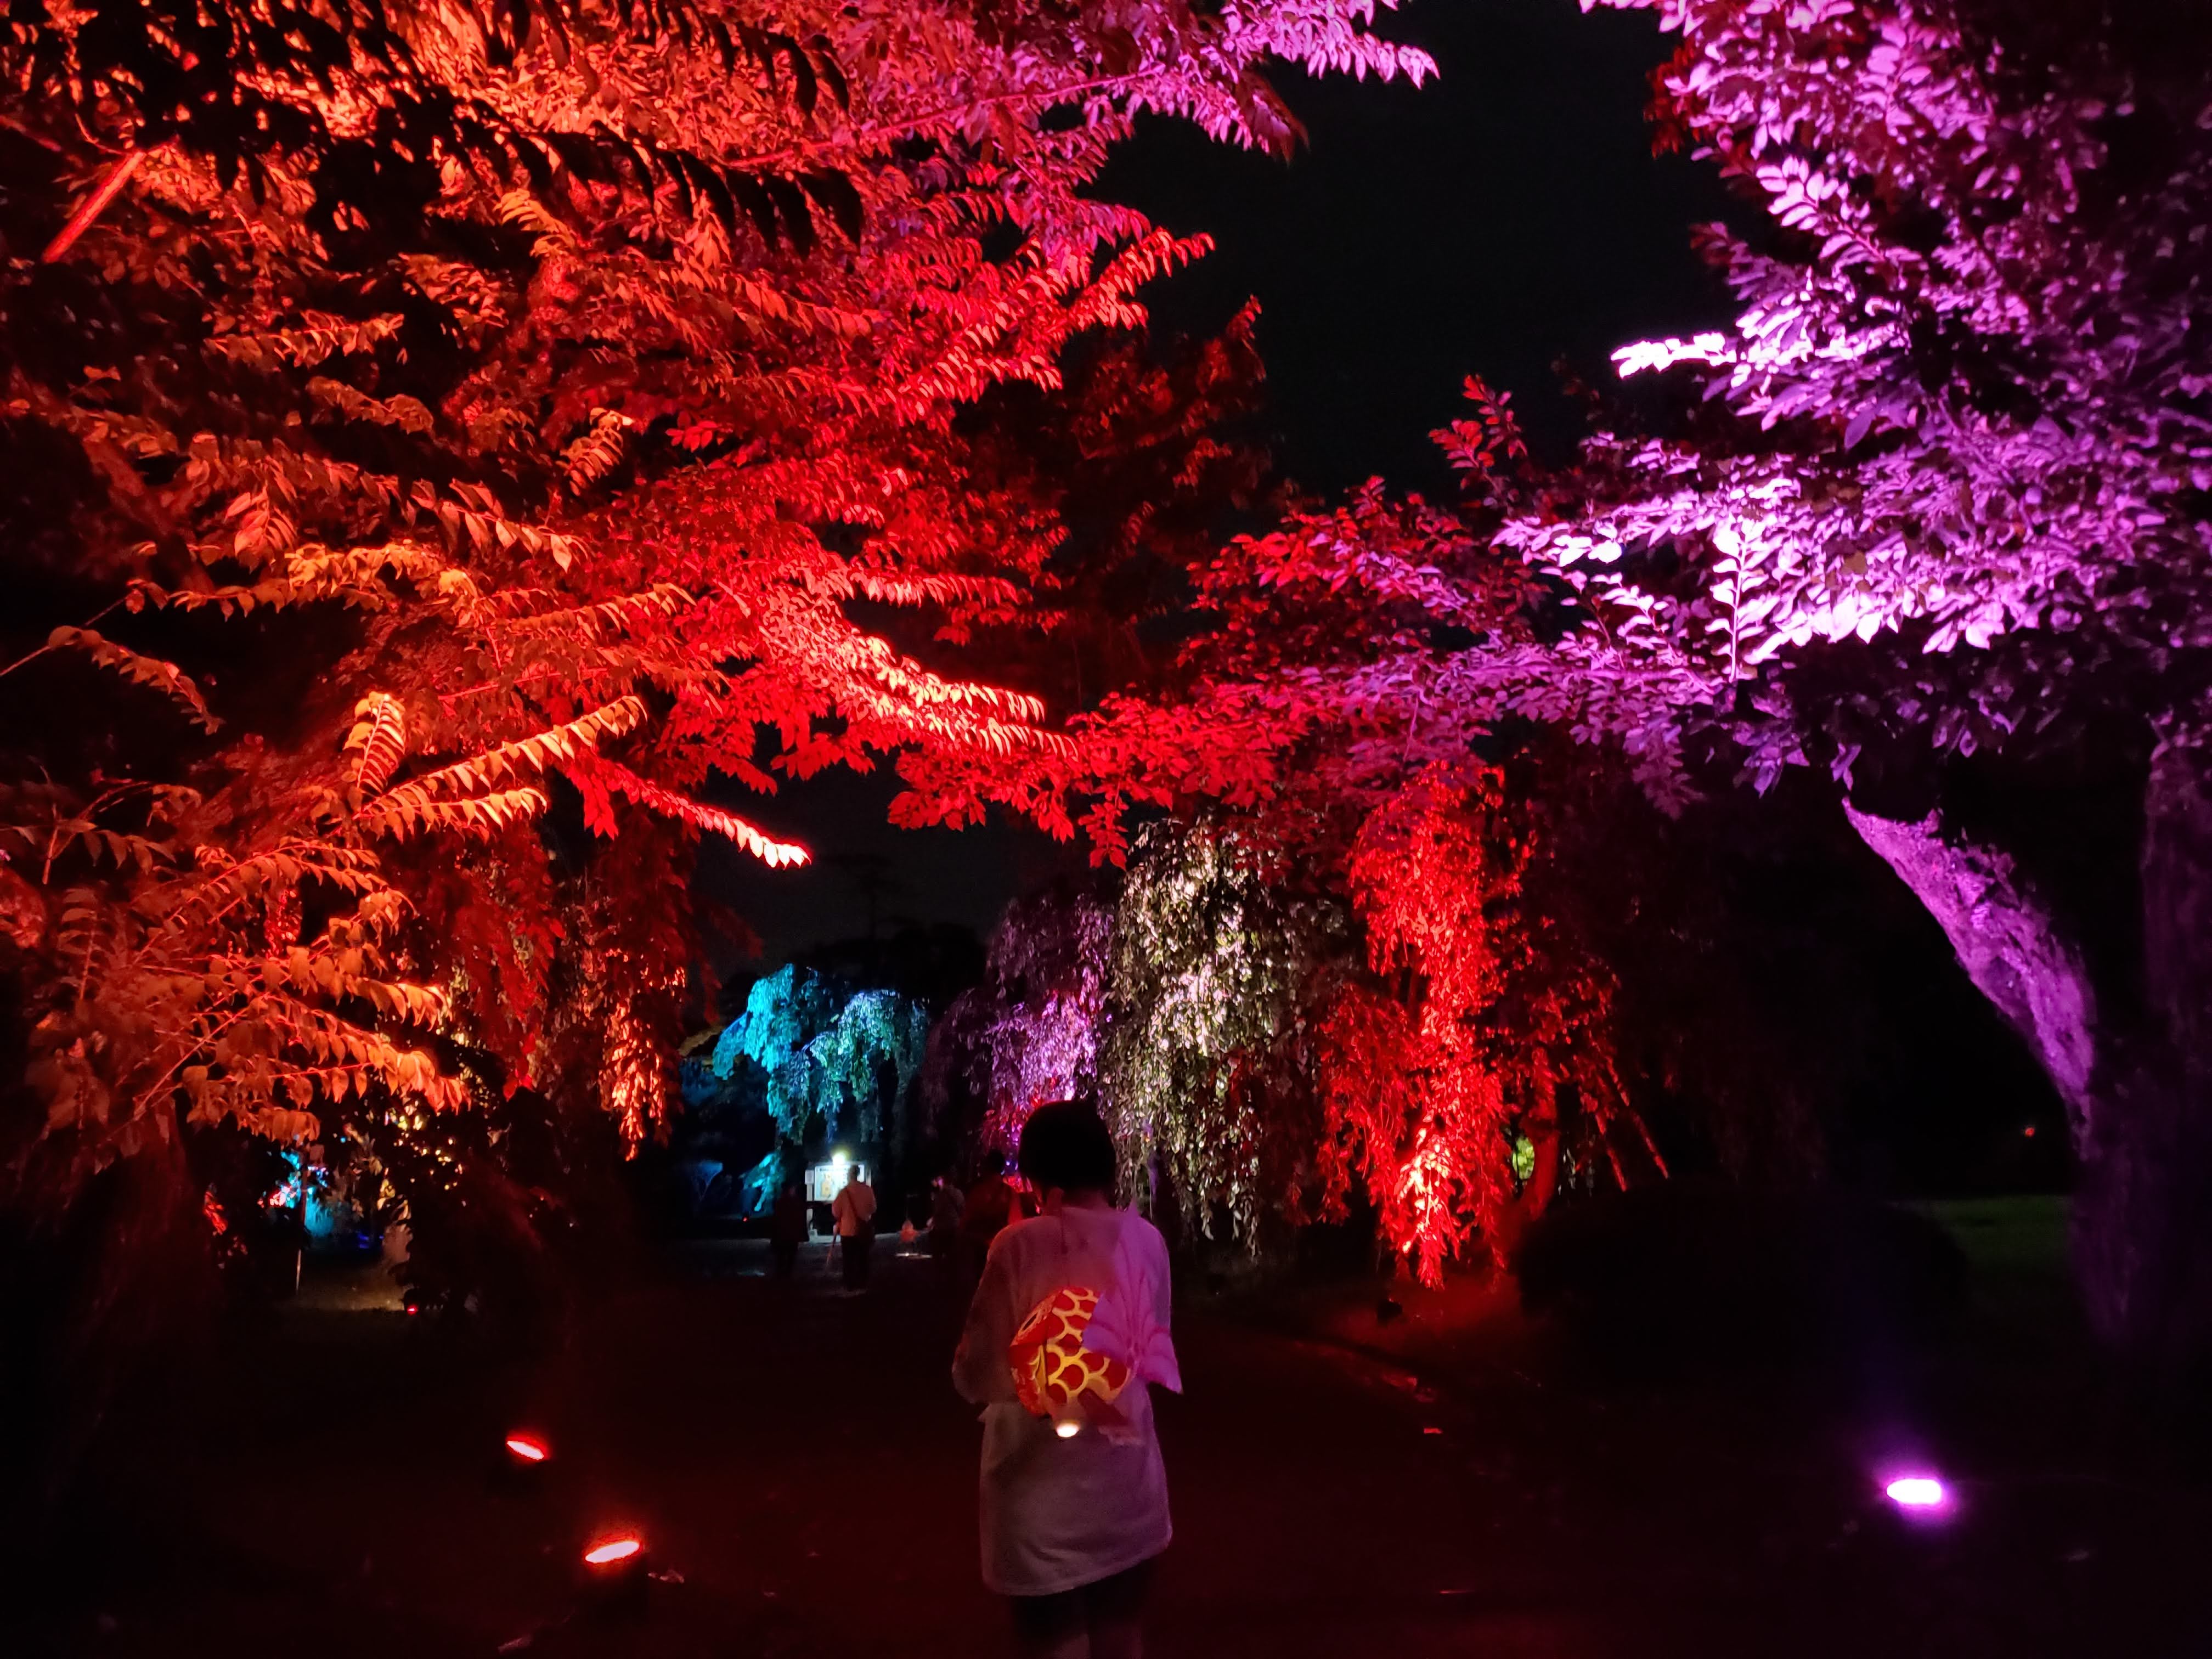 10 23 11 8 開催中止 弘前城 ネイキッド光の桜紅葉 さくらもみじ 弘前公園総合情報